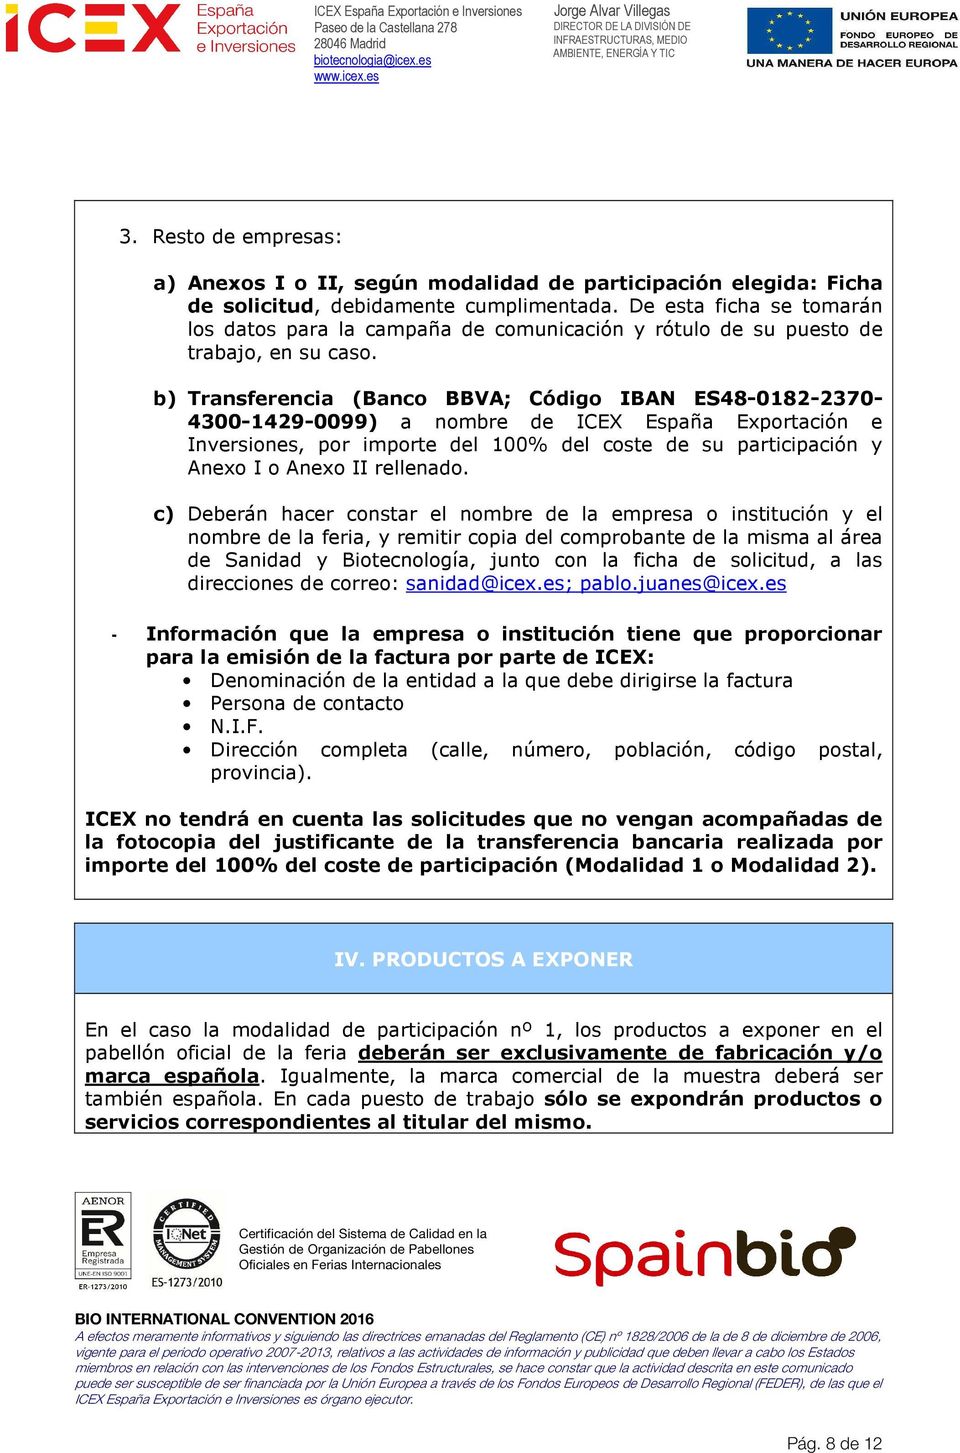 b) Transferencia (Banco BBVA; Código IBAN ES48-0182-2370-4300-1429-0099) a nombre de ICEX España Exportación e Inversiones, por importe del 100% del coste de su participación y Anexo I o Anexo II